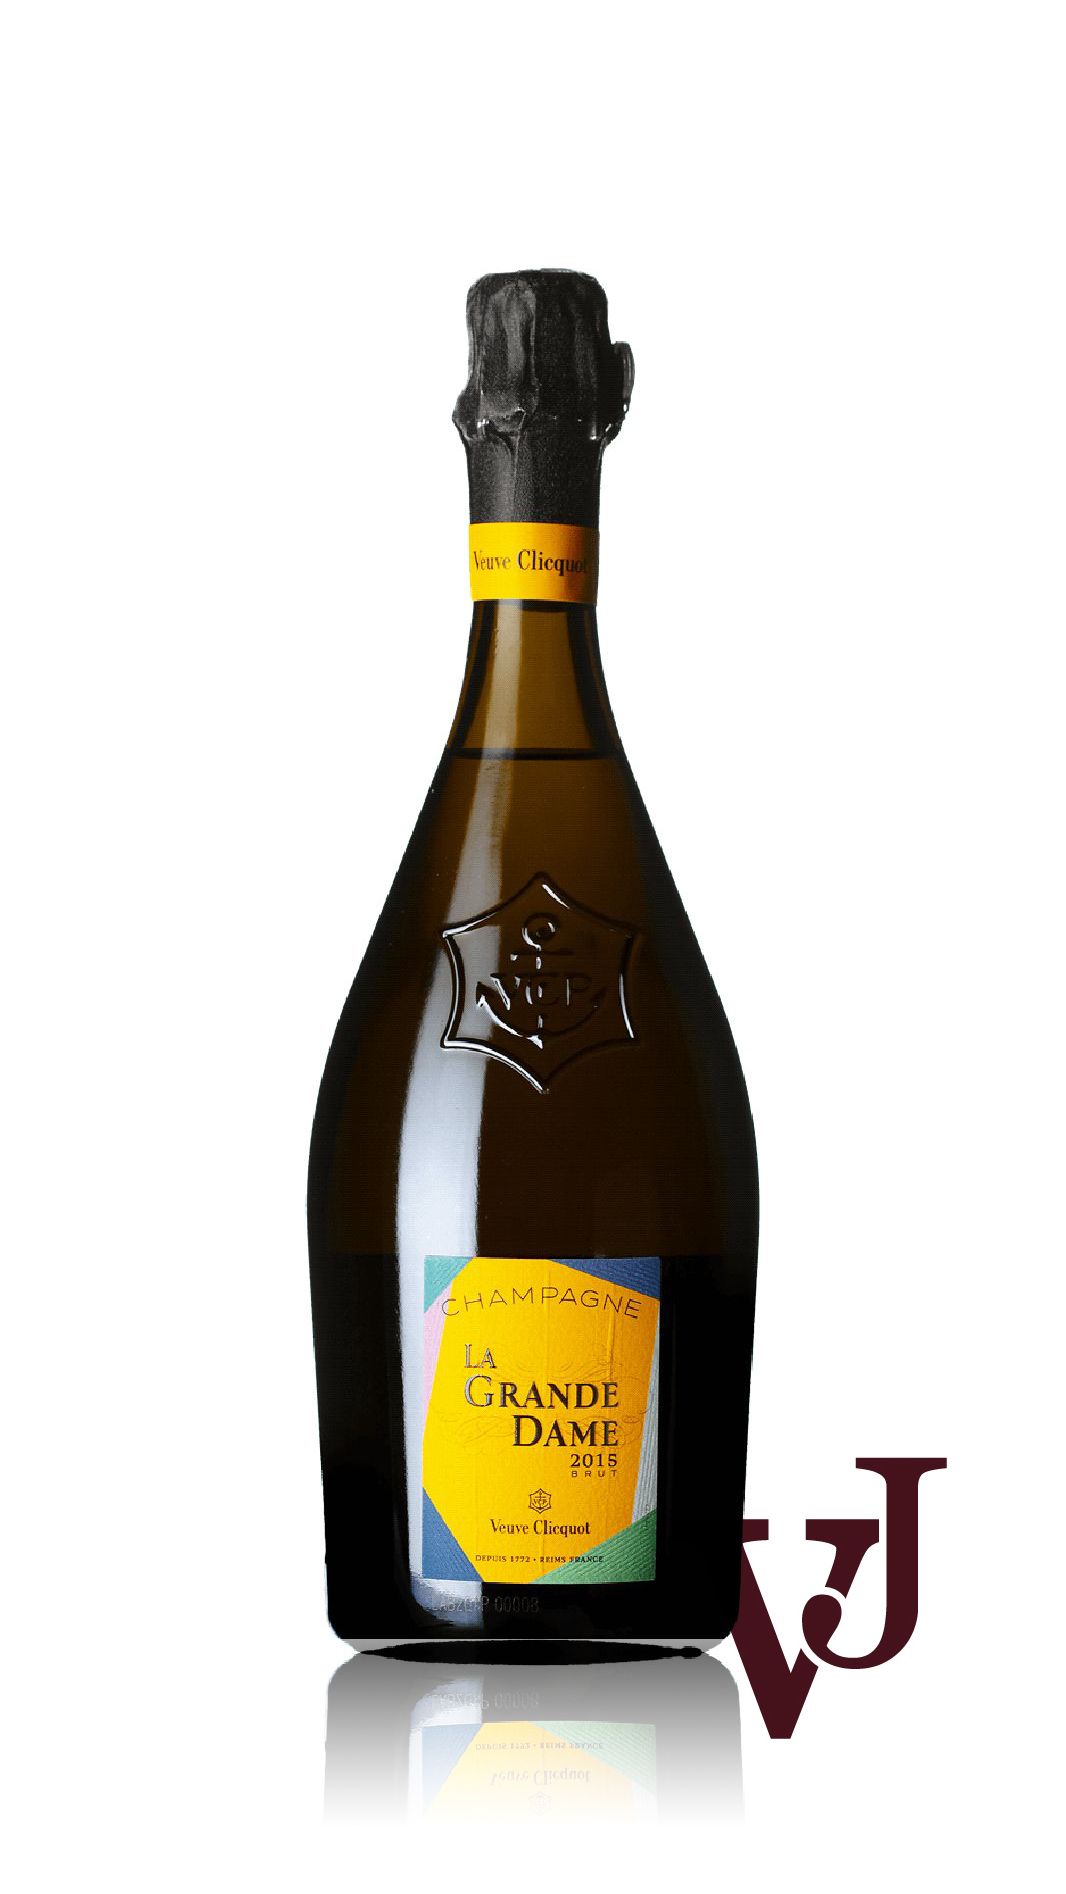 Mousserande Vin - Veuve Clicquot La Grande Dame 2015 artikel nummer 9427001 från producenten Veuve Clicquot från Frankrike